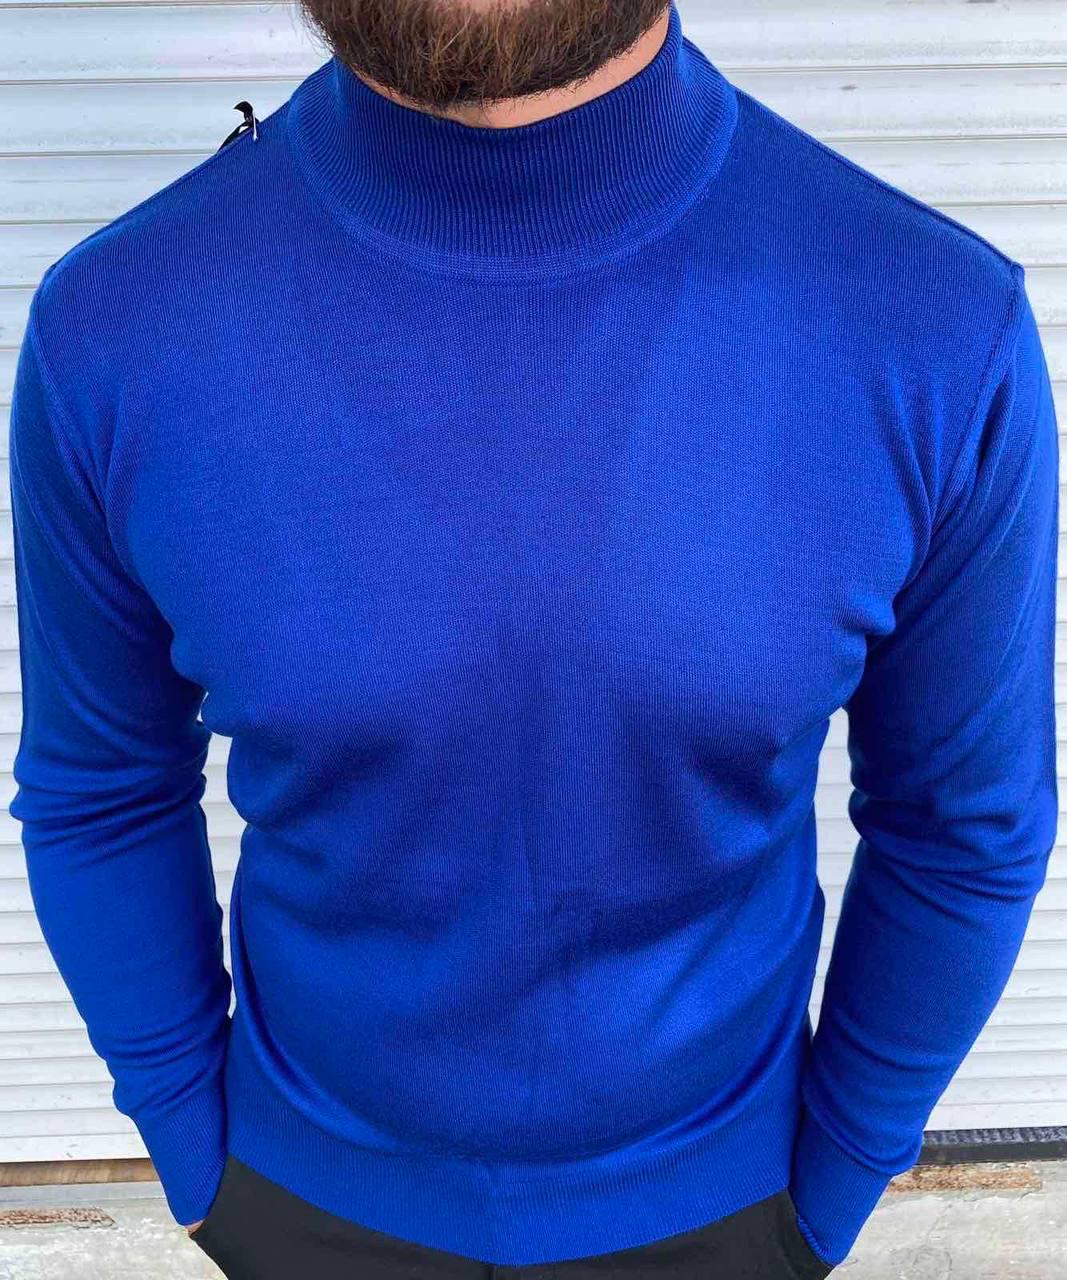 Свитера мужские | Купить мужской свитер в интернет-магазине Lacoste